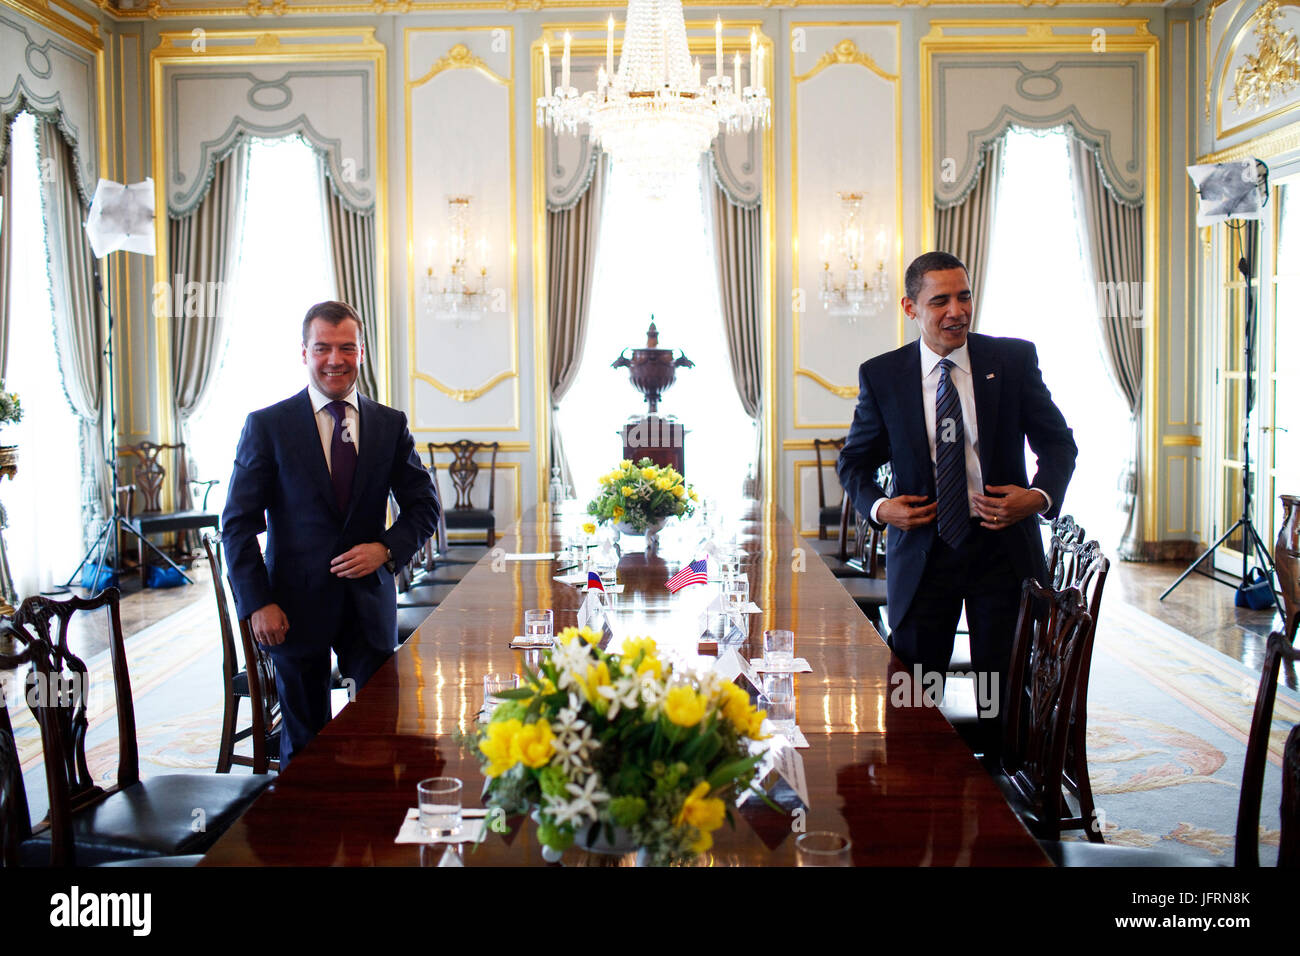 Le président Barack Obama conclut une réunion bilatérale avec le président Dmitri Medvedev de la Russie à Winfield House le 1 avril 2009, à Londres. Photo Officiel de la Maison Blanche par Pete Souza Banque D'Images